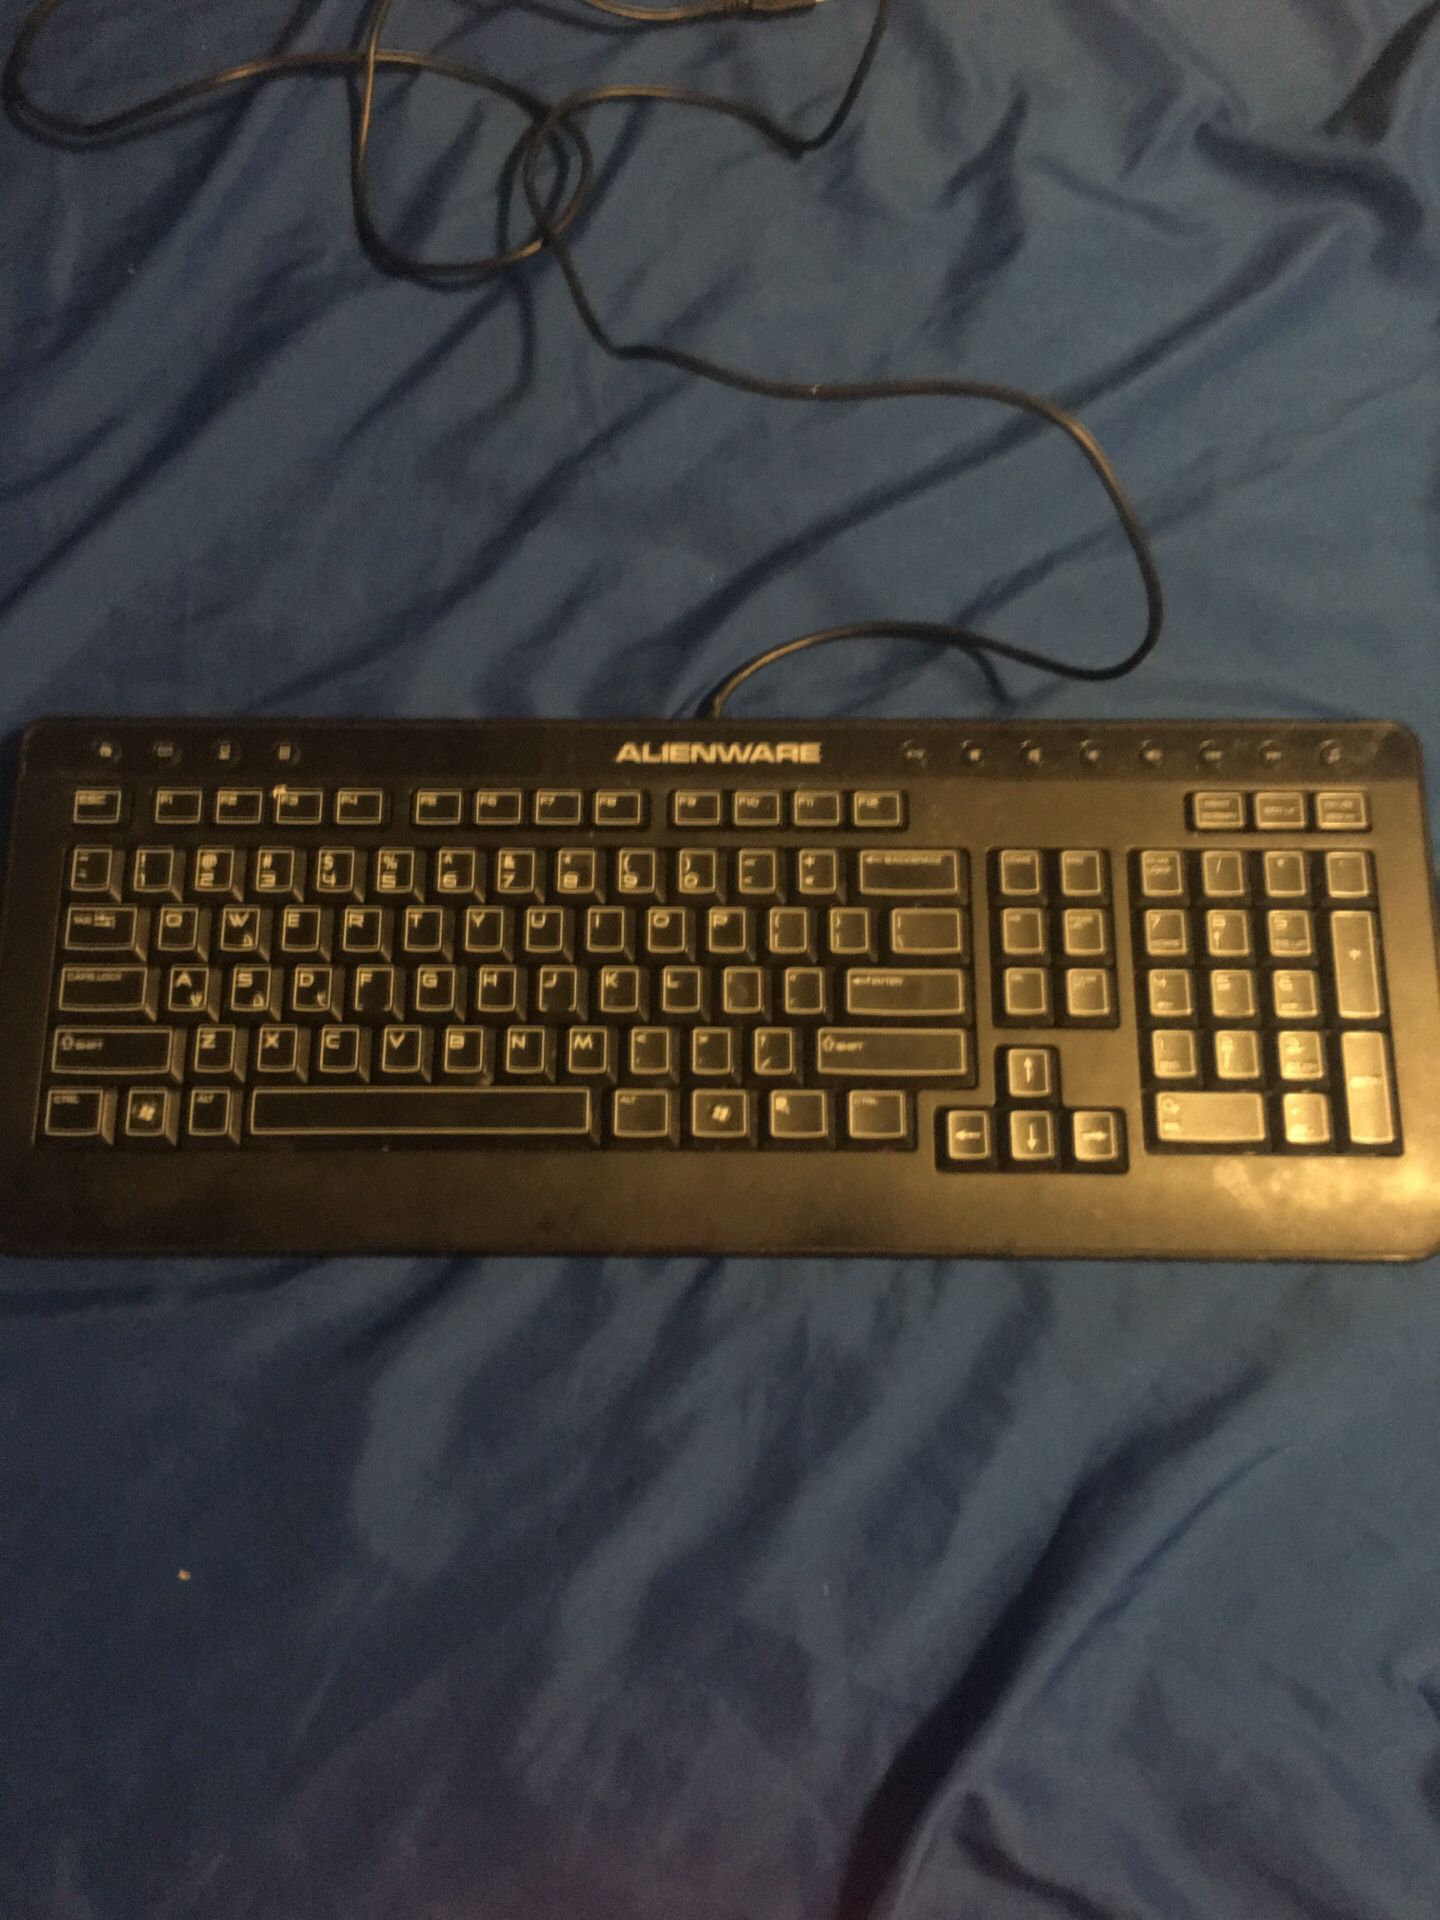 AlienWare keyboard